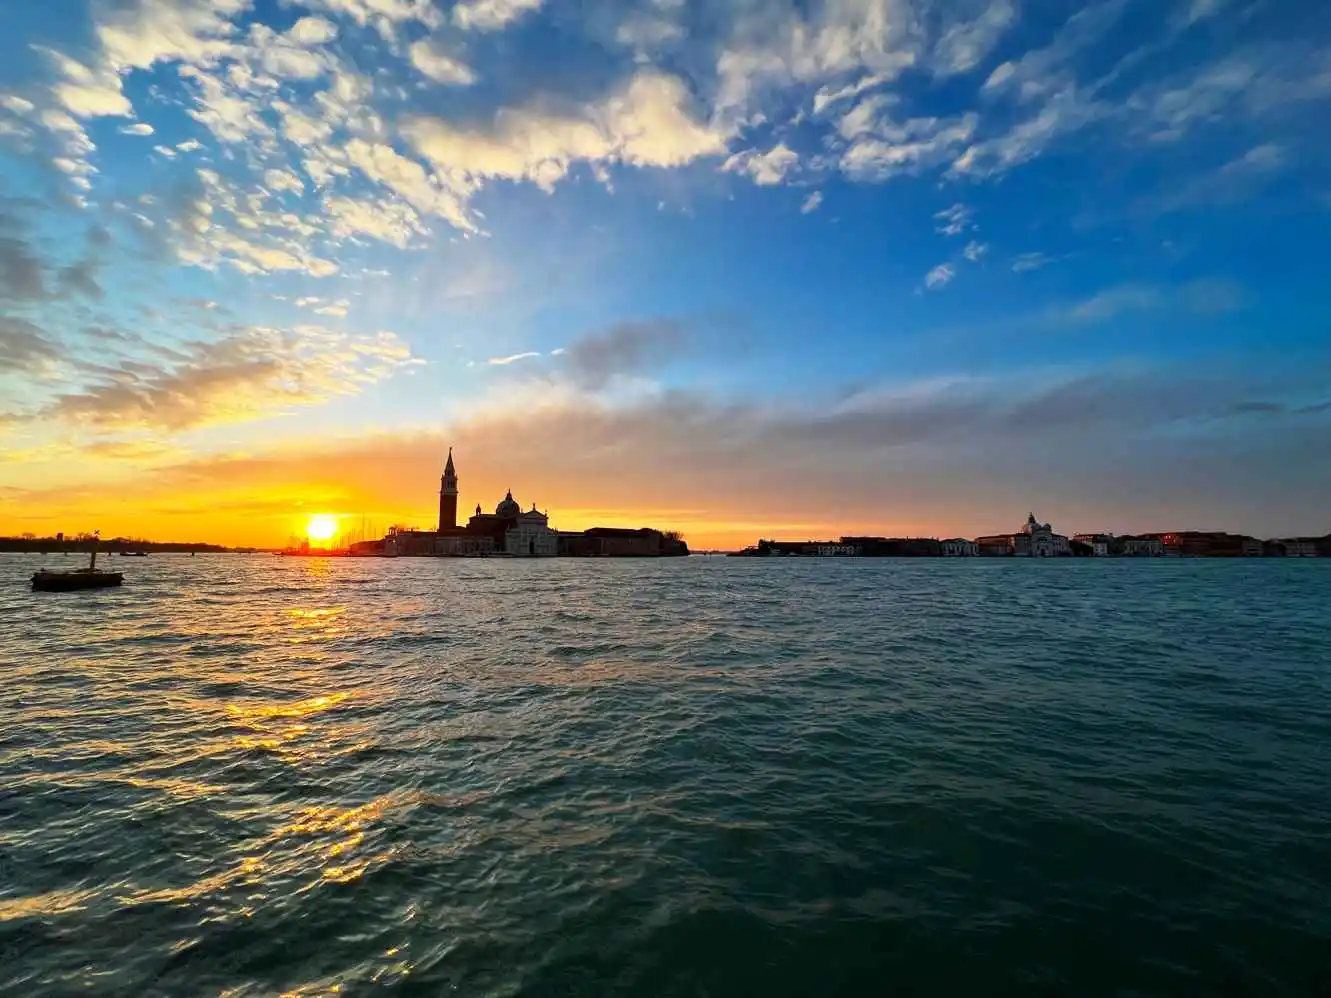 Island of San Giorgio Maggiore at sunset